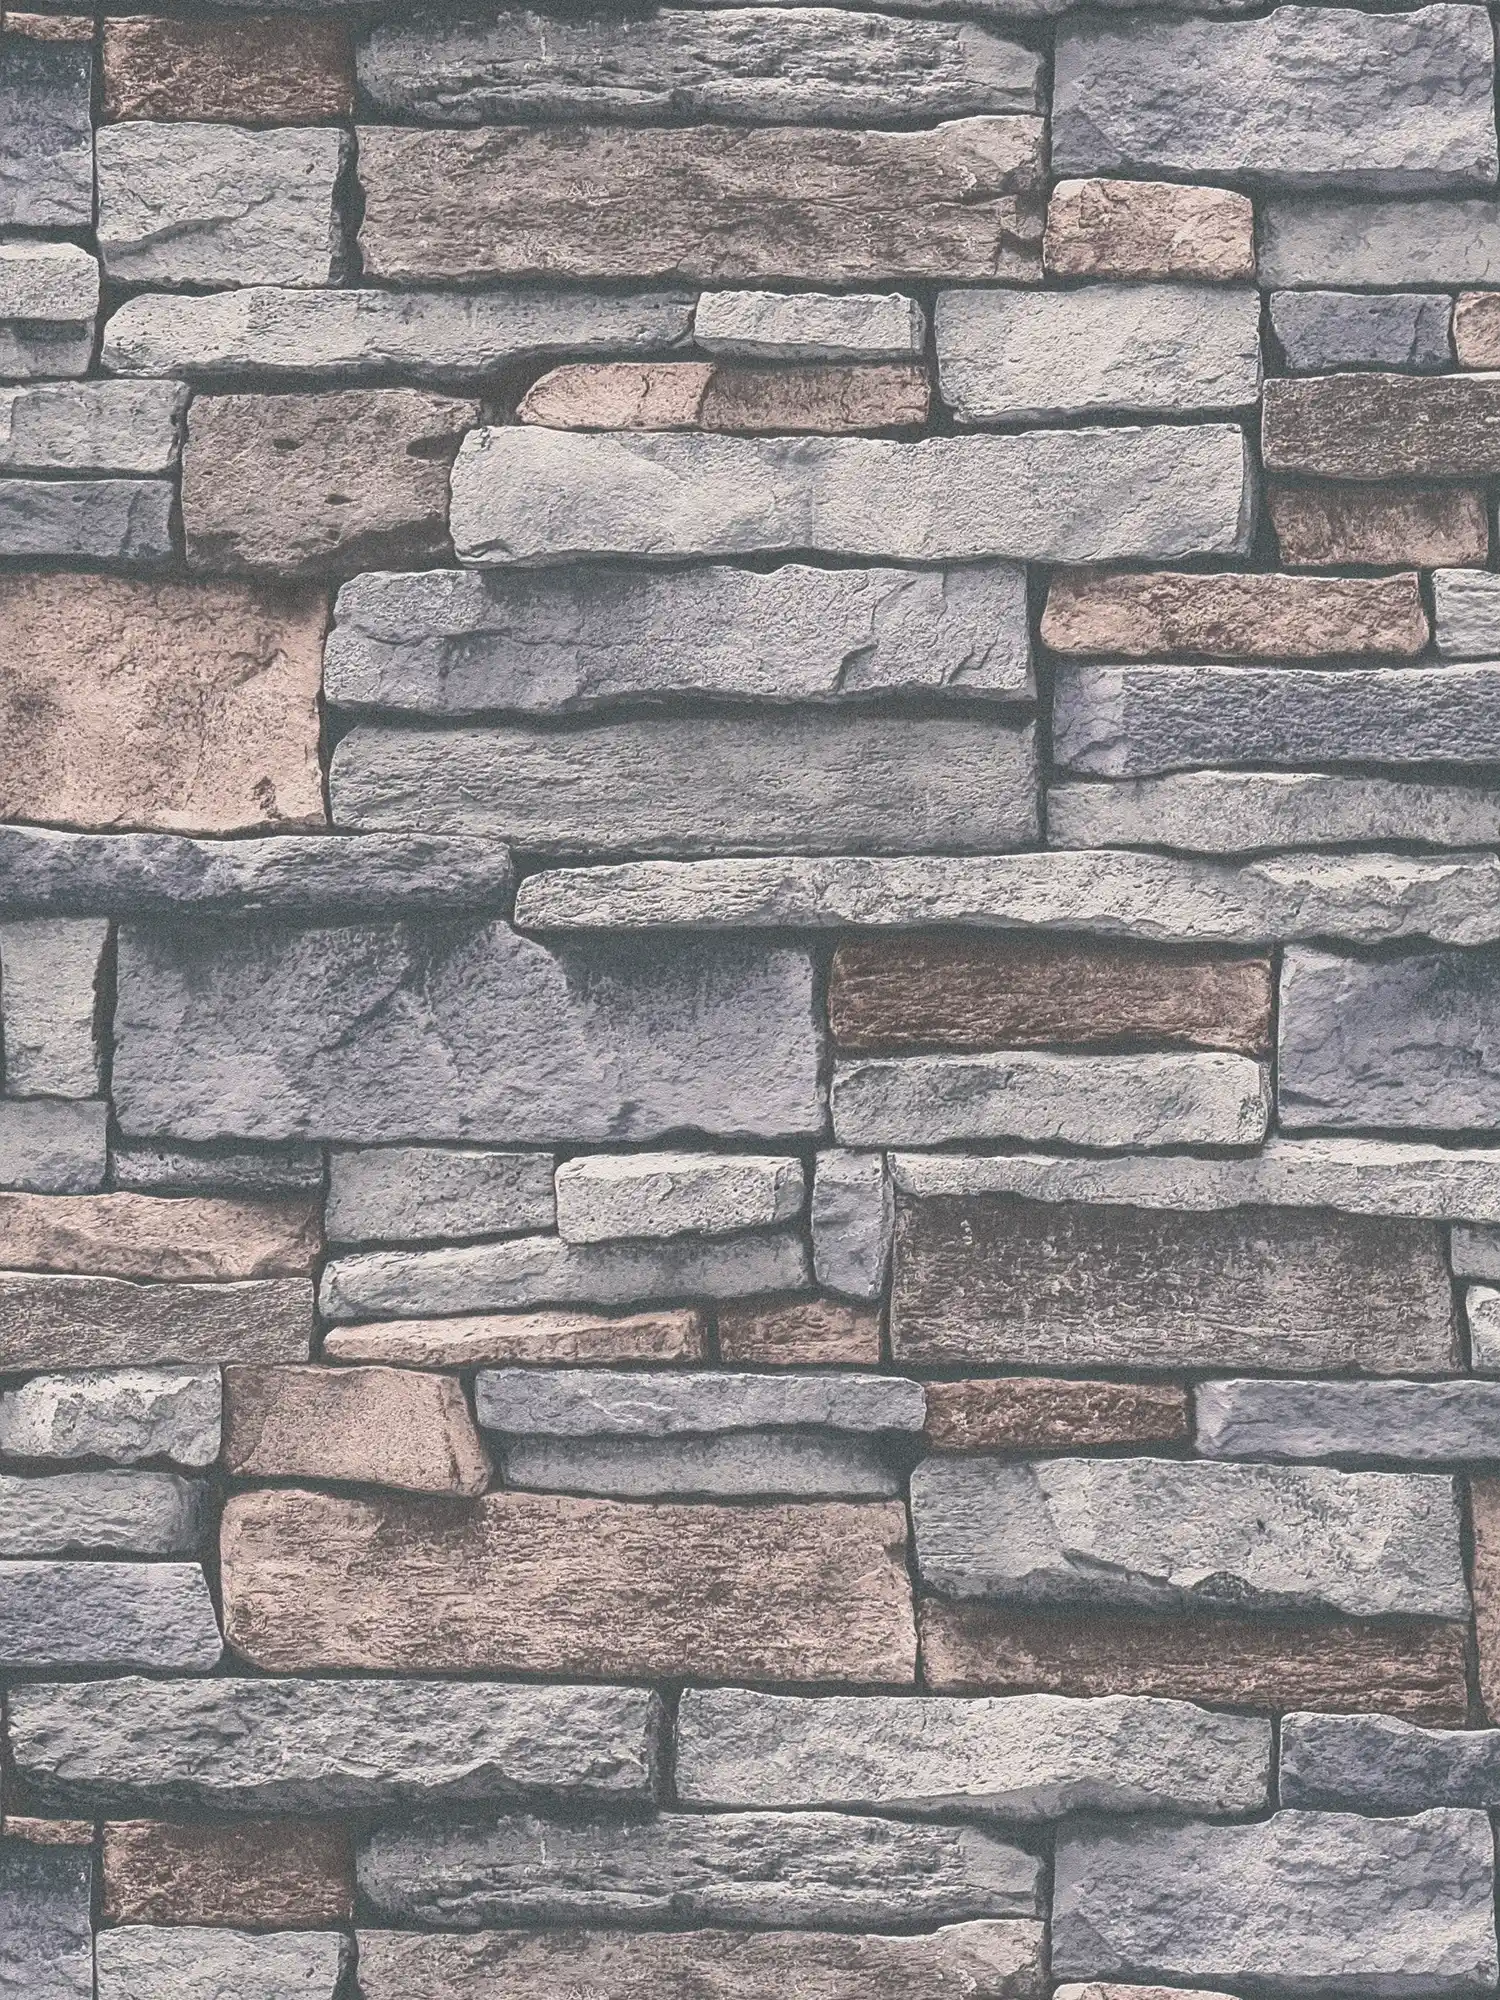 Vliestapete in Steinoptik mit Natursteinmauer – Grau, Beige, Braun
